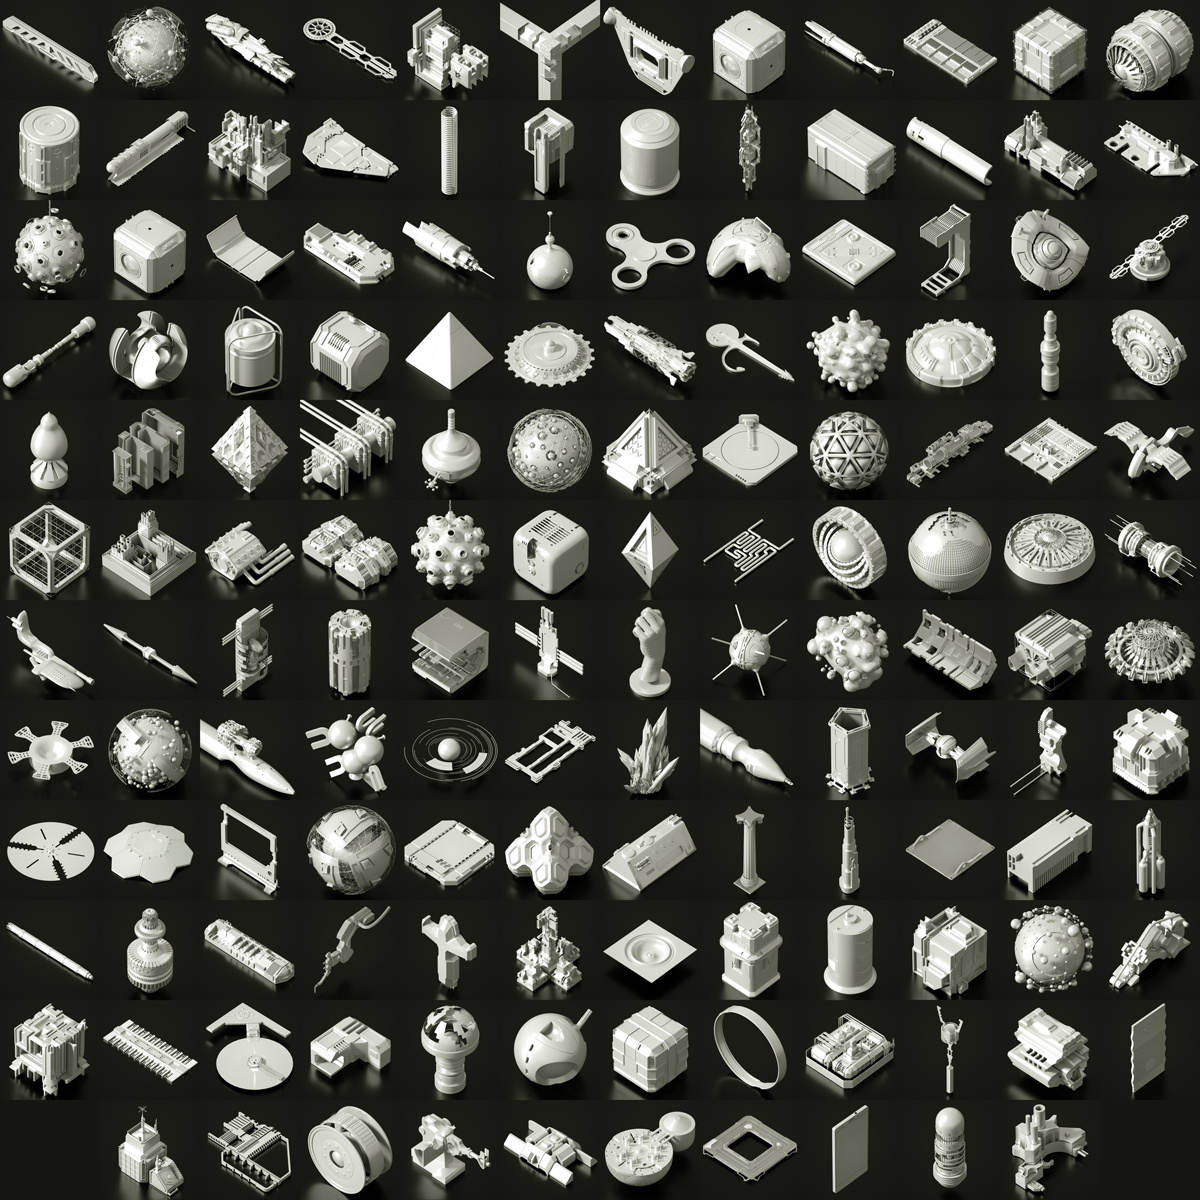 05-Objects.jpg